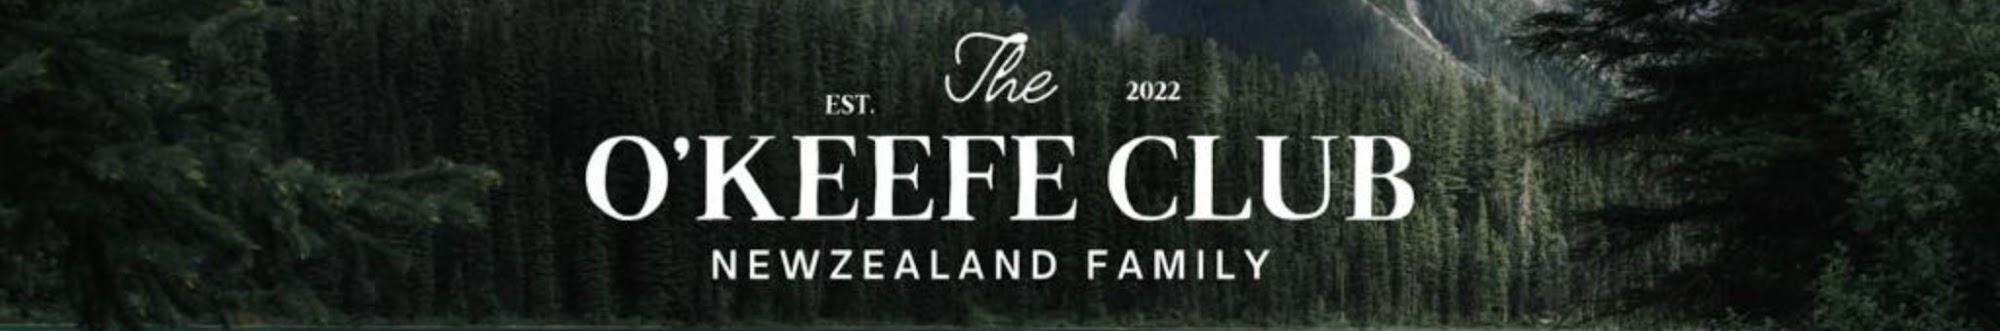 The O'Keefe Club